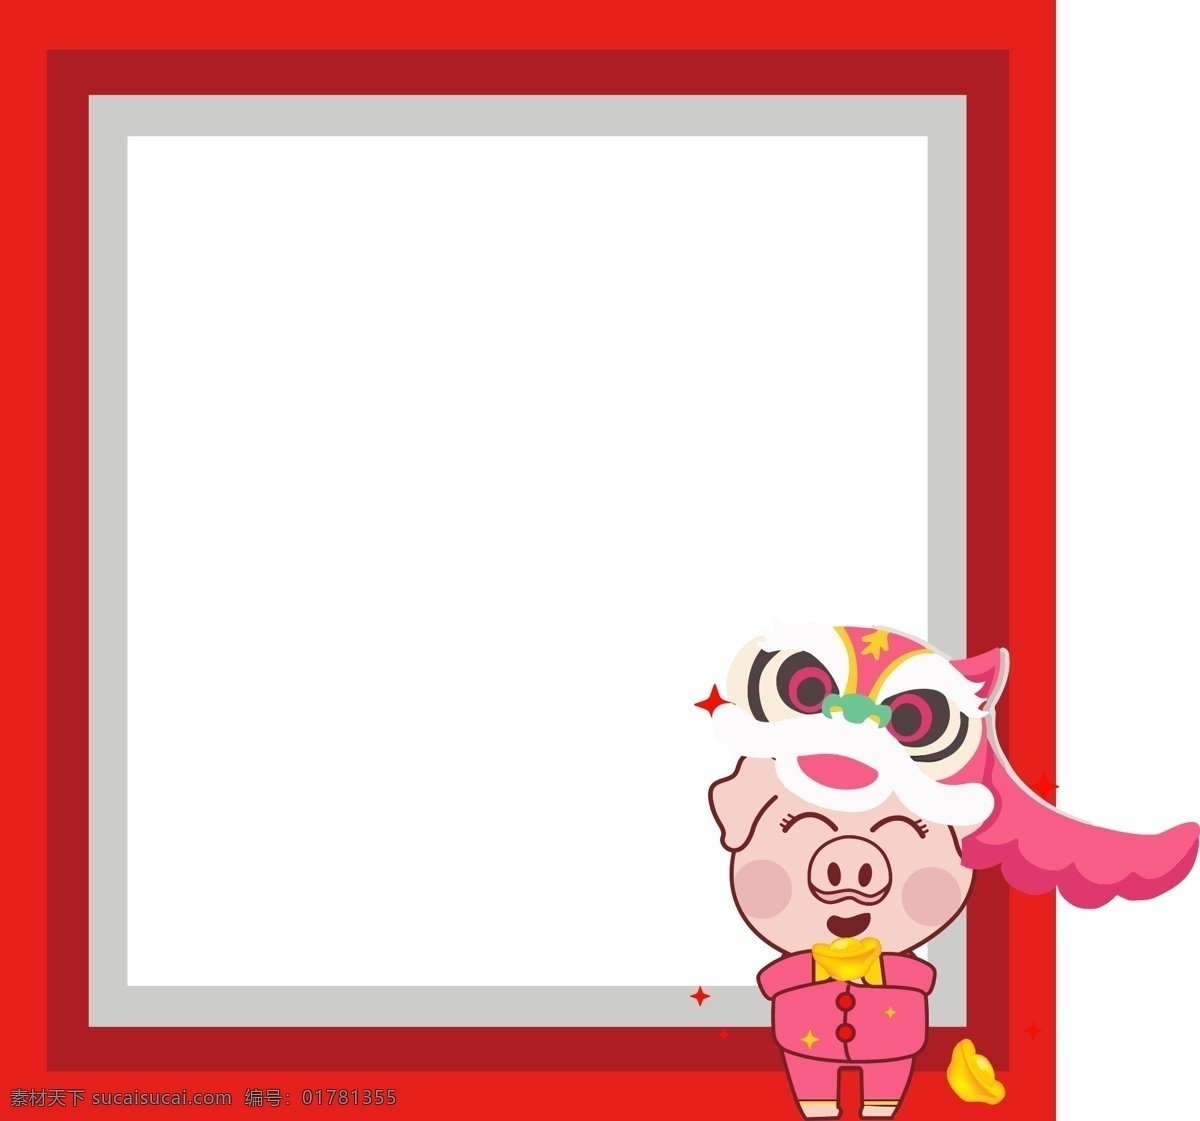 红色 喜庆 猪年 祝福 相框 红色喜庆 猪年祝福画框 猪年相框 新年相框 清新相框 创意相框 相框设计 年货相框